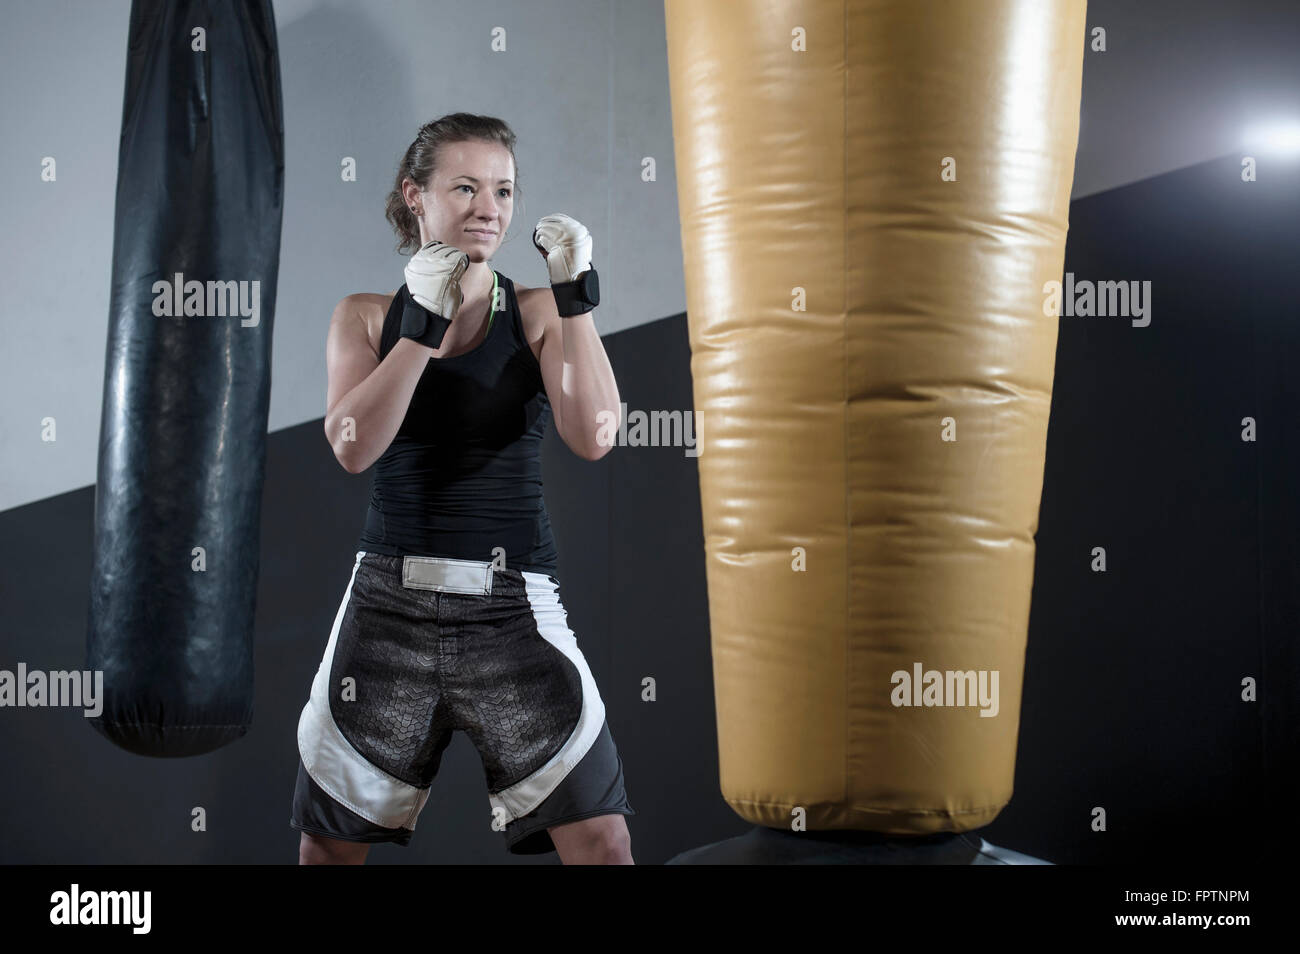 Jeune femme faisant la formation de force en enfonçant le sac dans la salle de sport, Bavière, Allemagne Banque D'Images